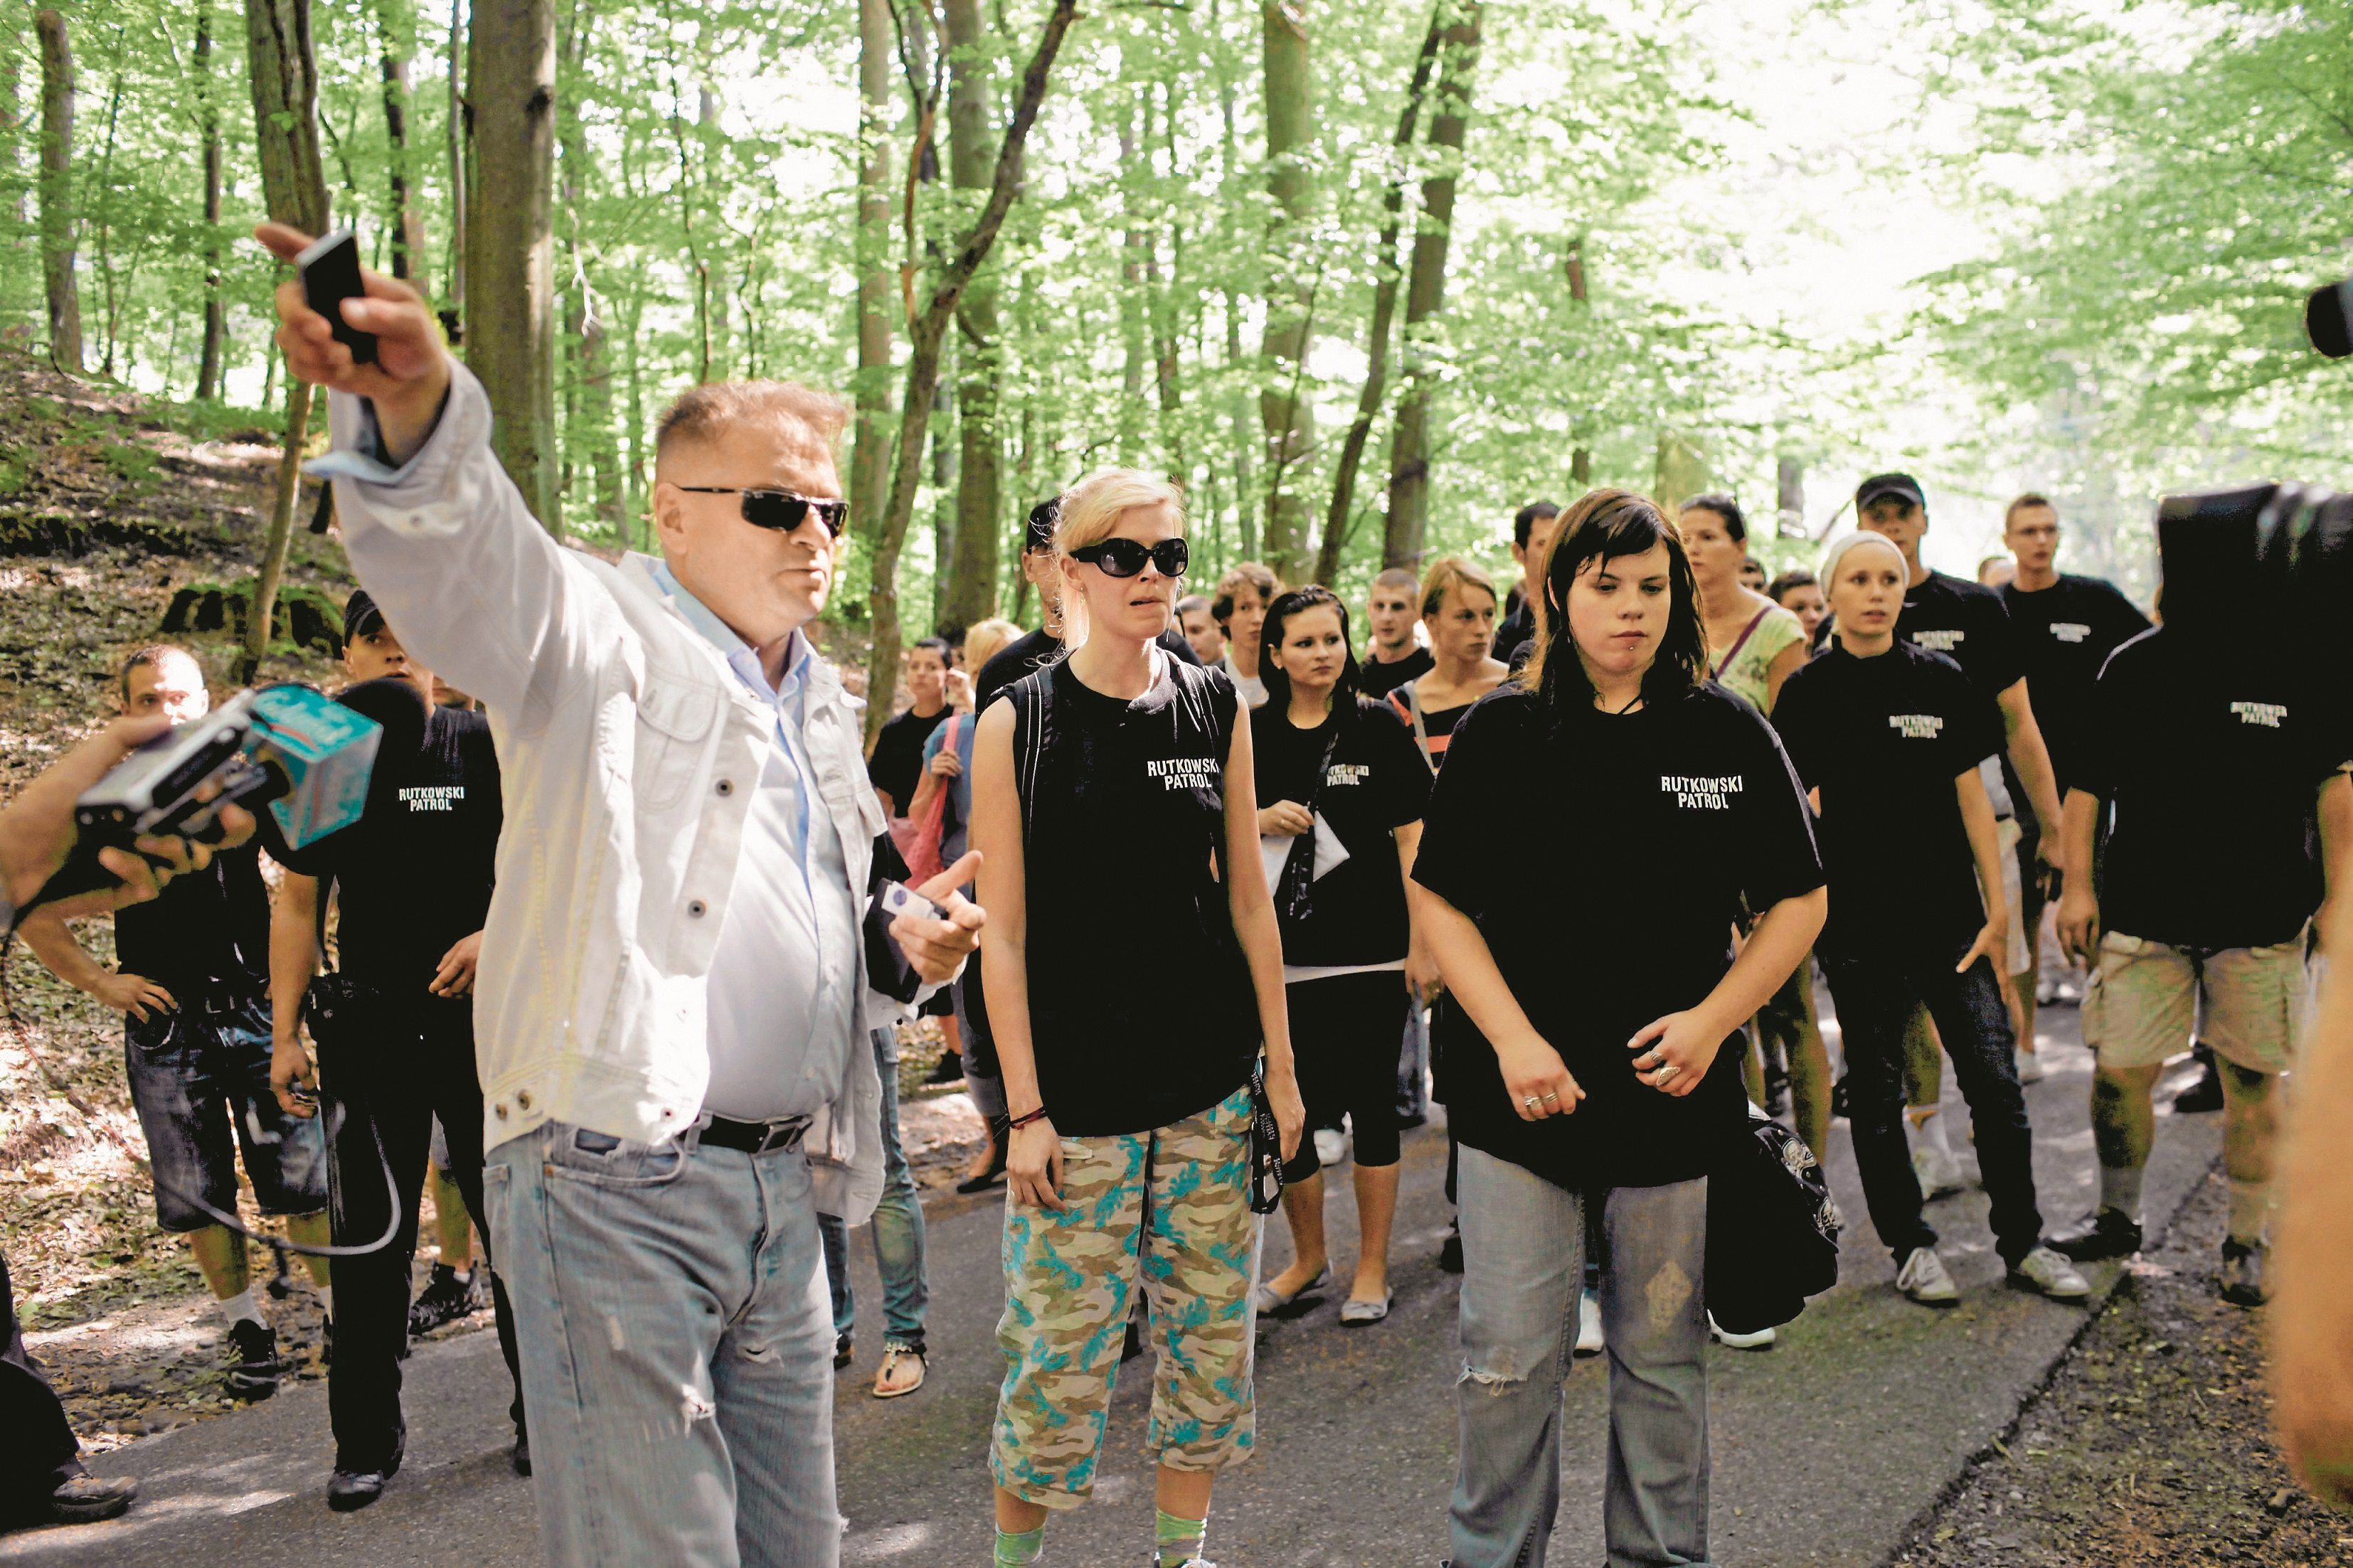 Detektyw Krzysztof Rutkowski z grupą ochotników przeszukuje okoliczne lasy, Gdańsk, 2010 r.